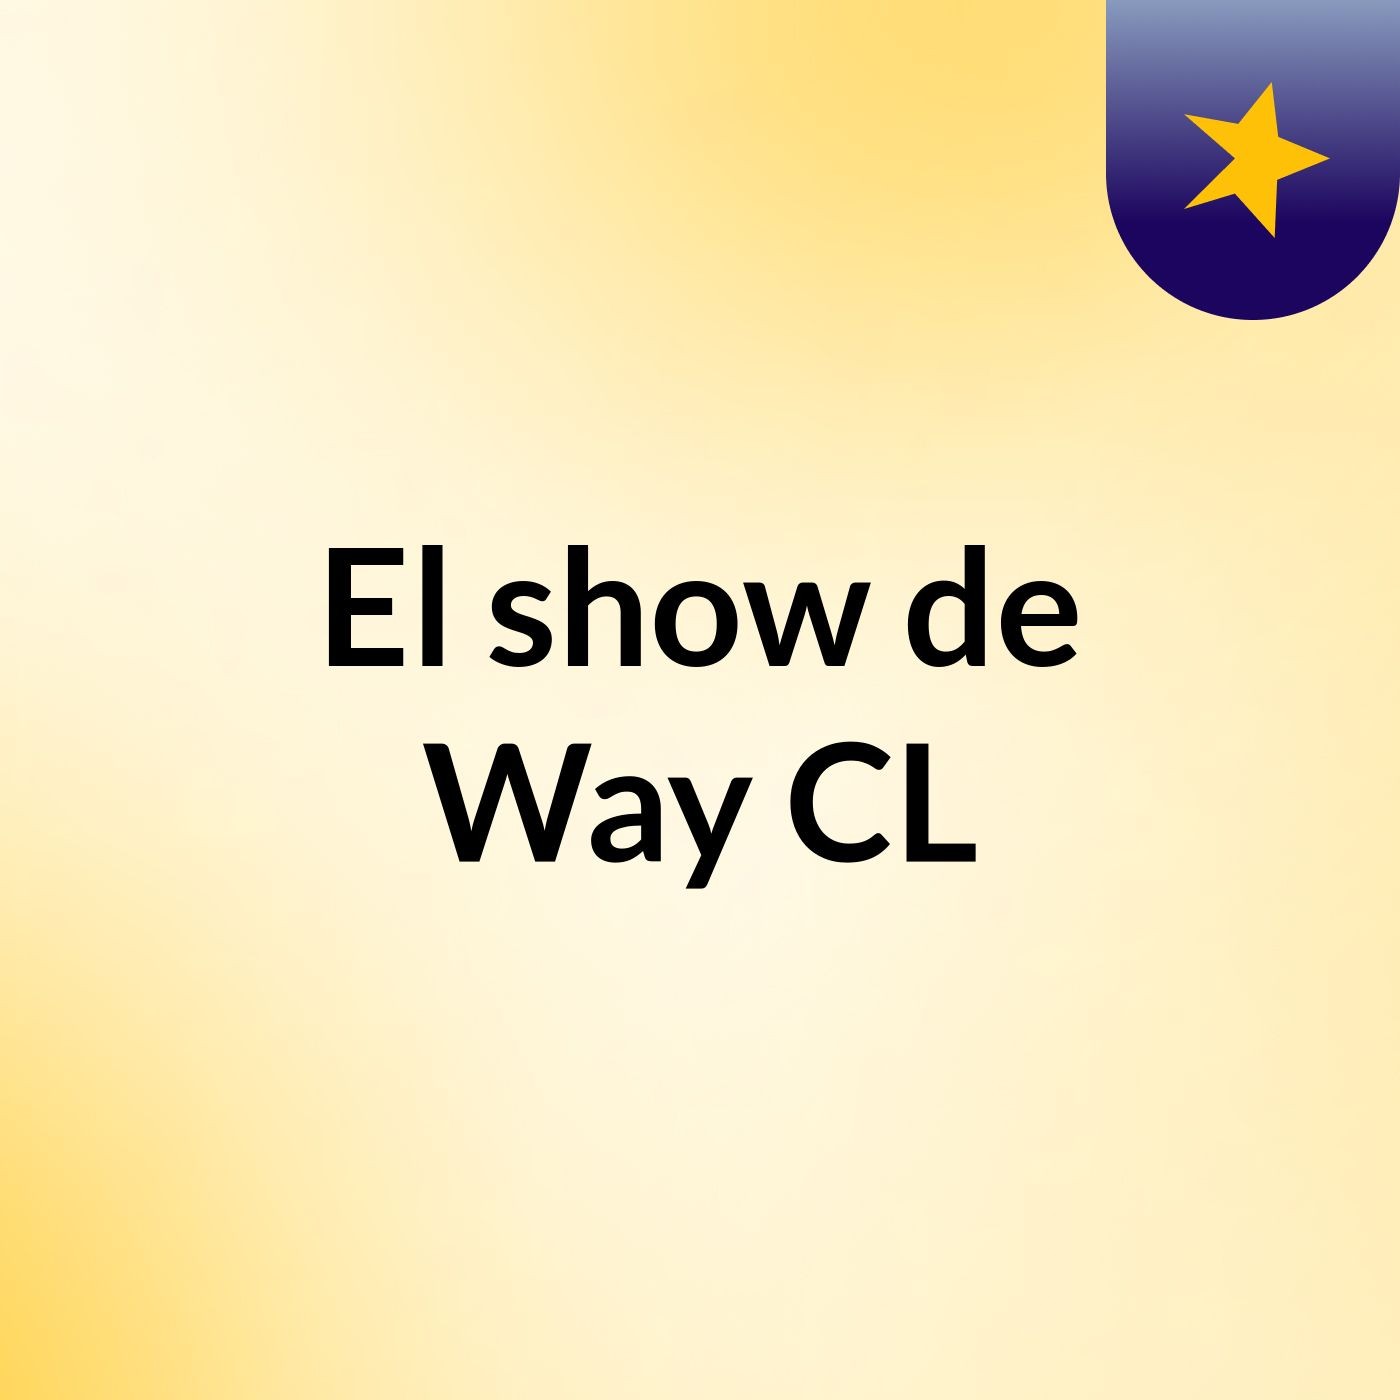 El show de Way CL